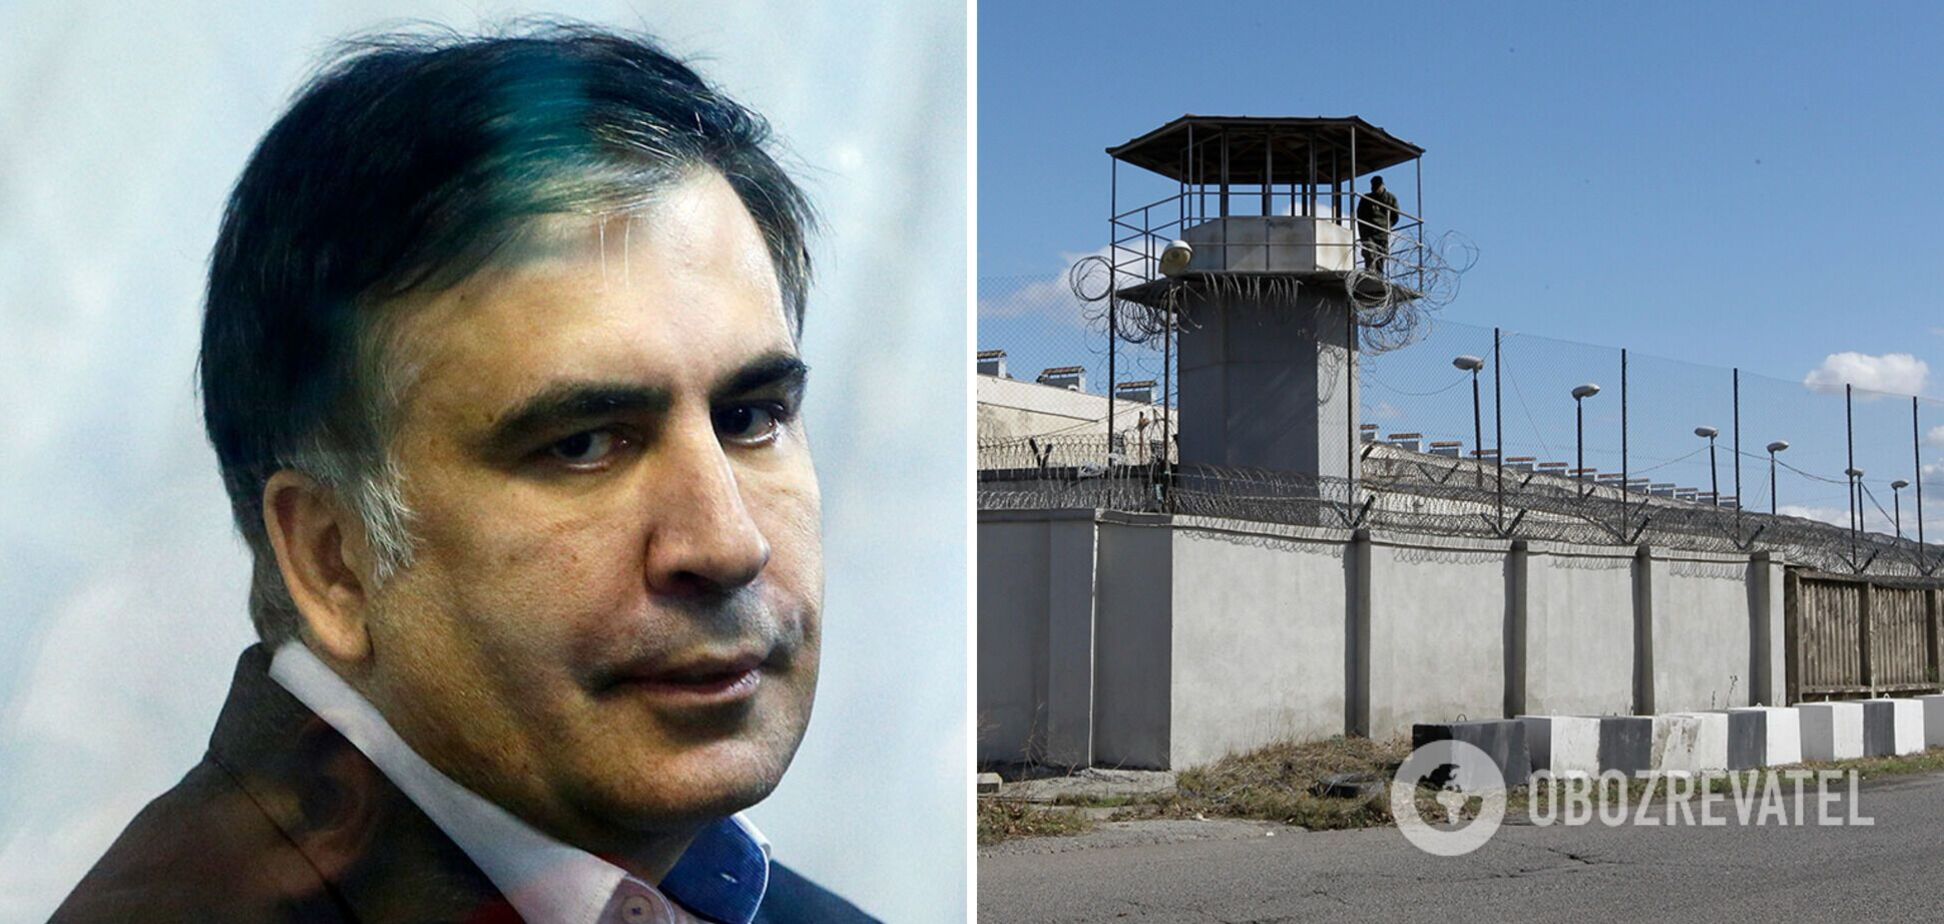 Спецслужба Грузии обвинила Саакашвили в координации подготовки госпереворота из тюрьмы